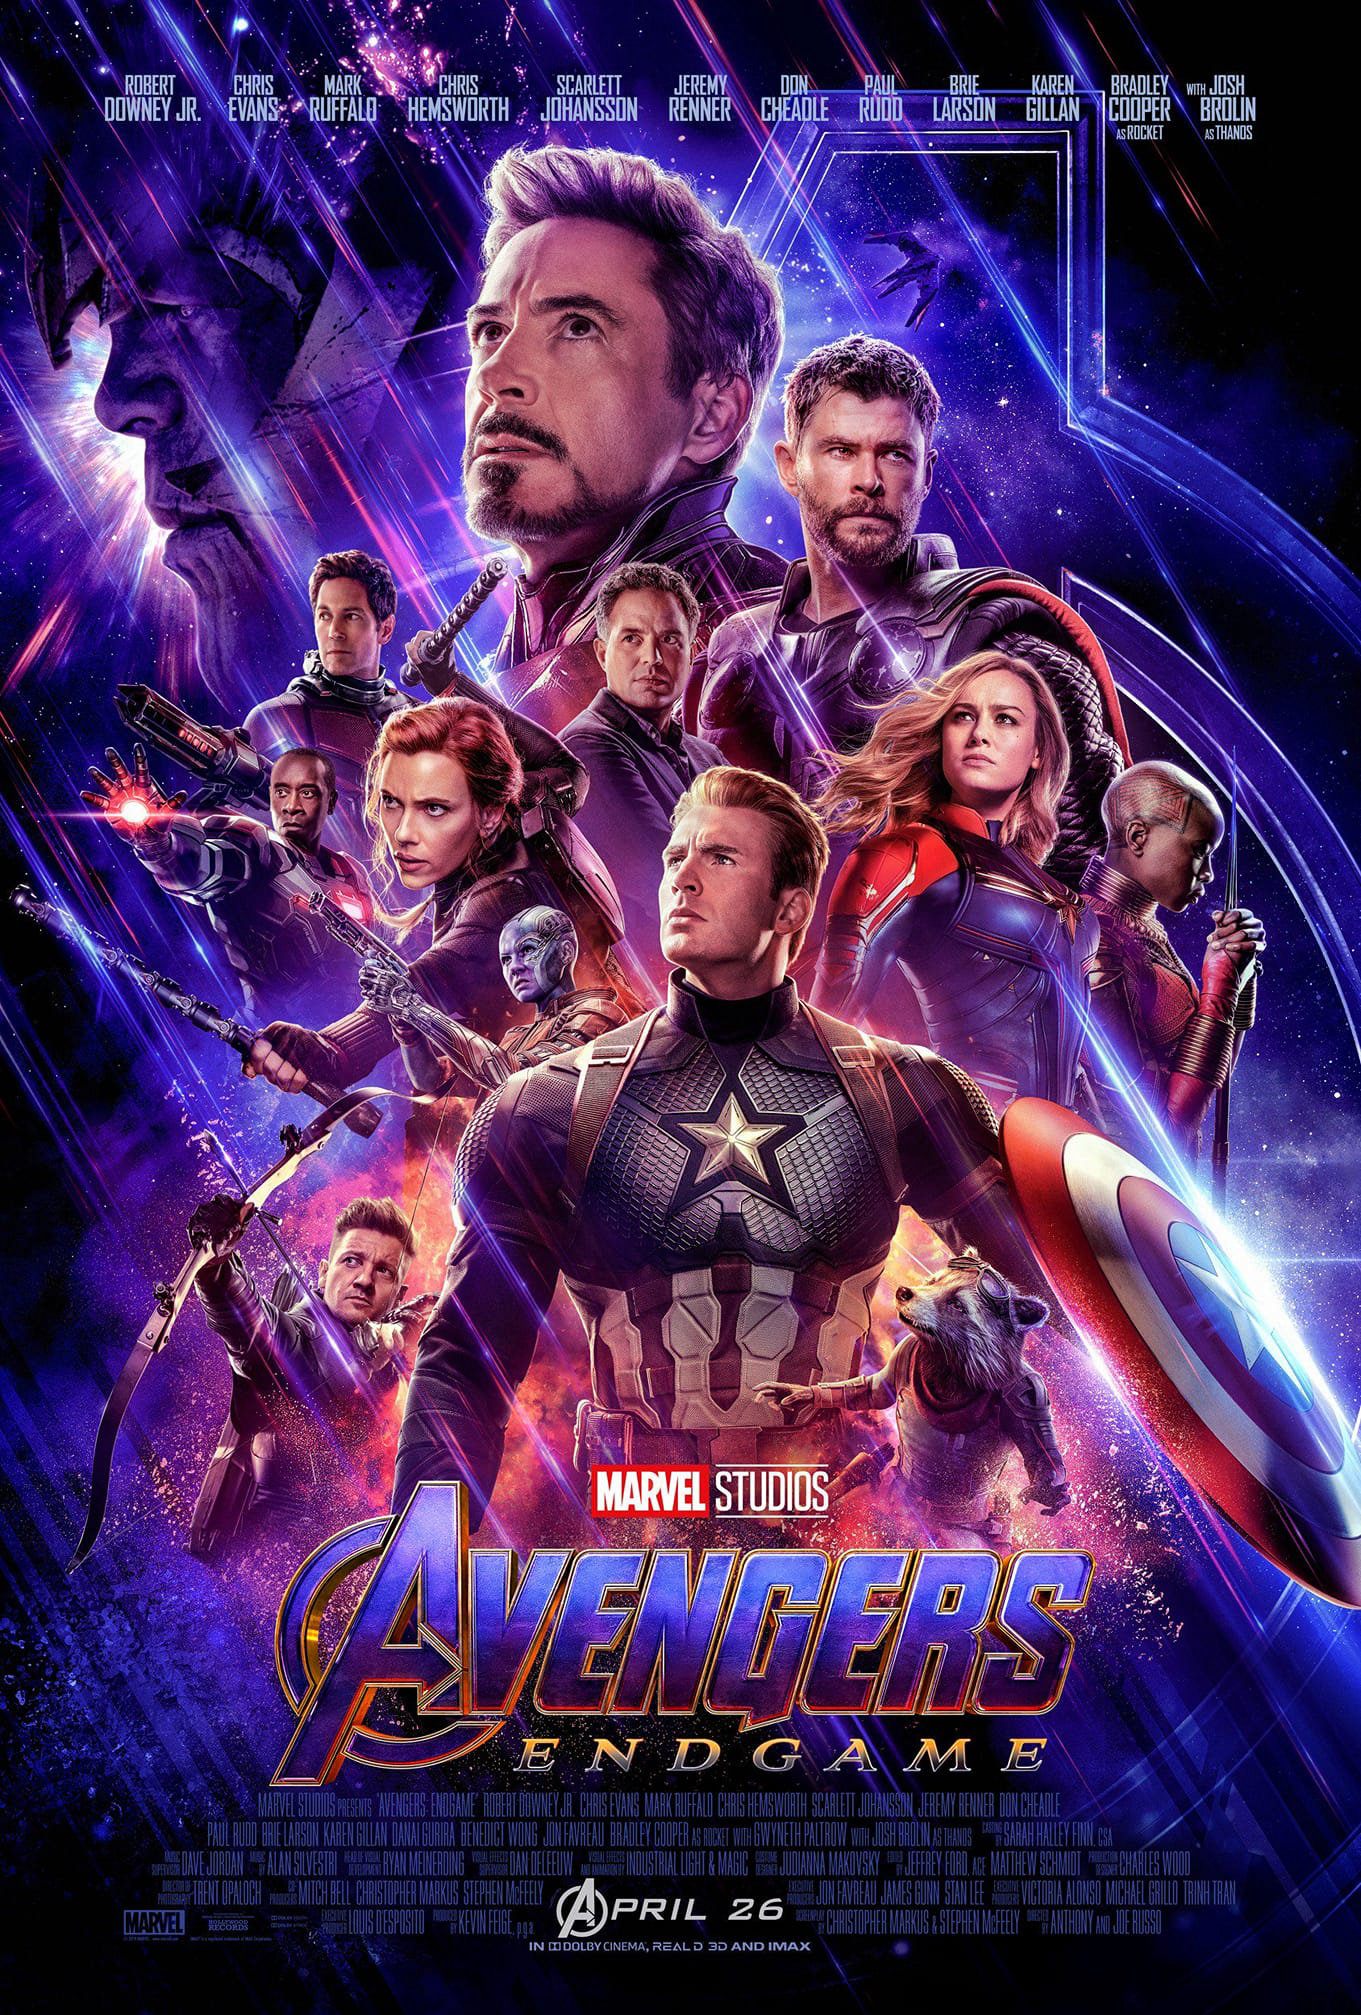 Avengers Endgame Iron Man Robert Downey Jr Captain America Chris Evans Bruce Banner Hulk Mark Ruffal Wallpaper:1361x2015